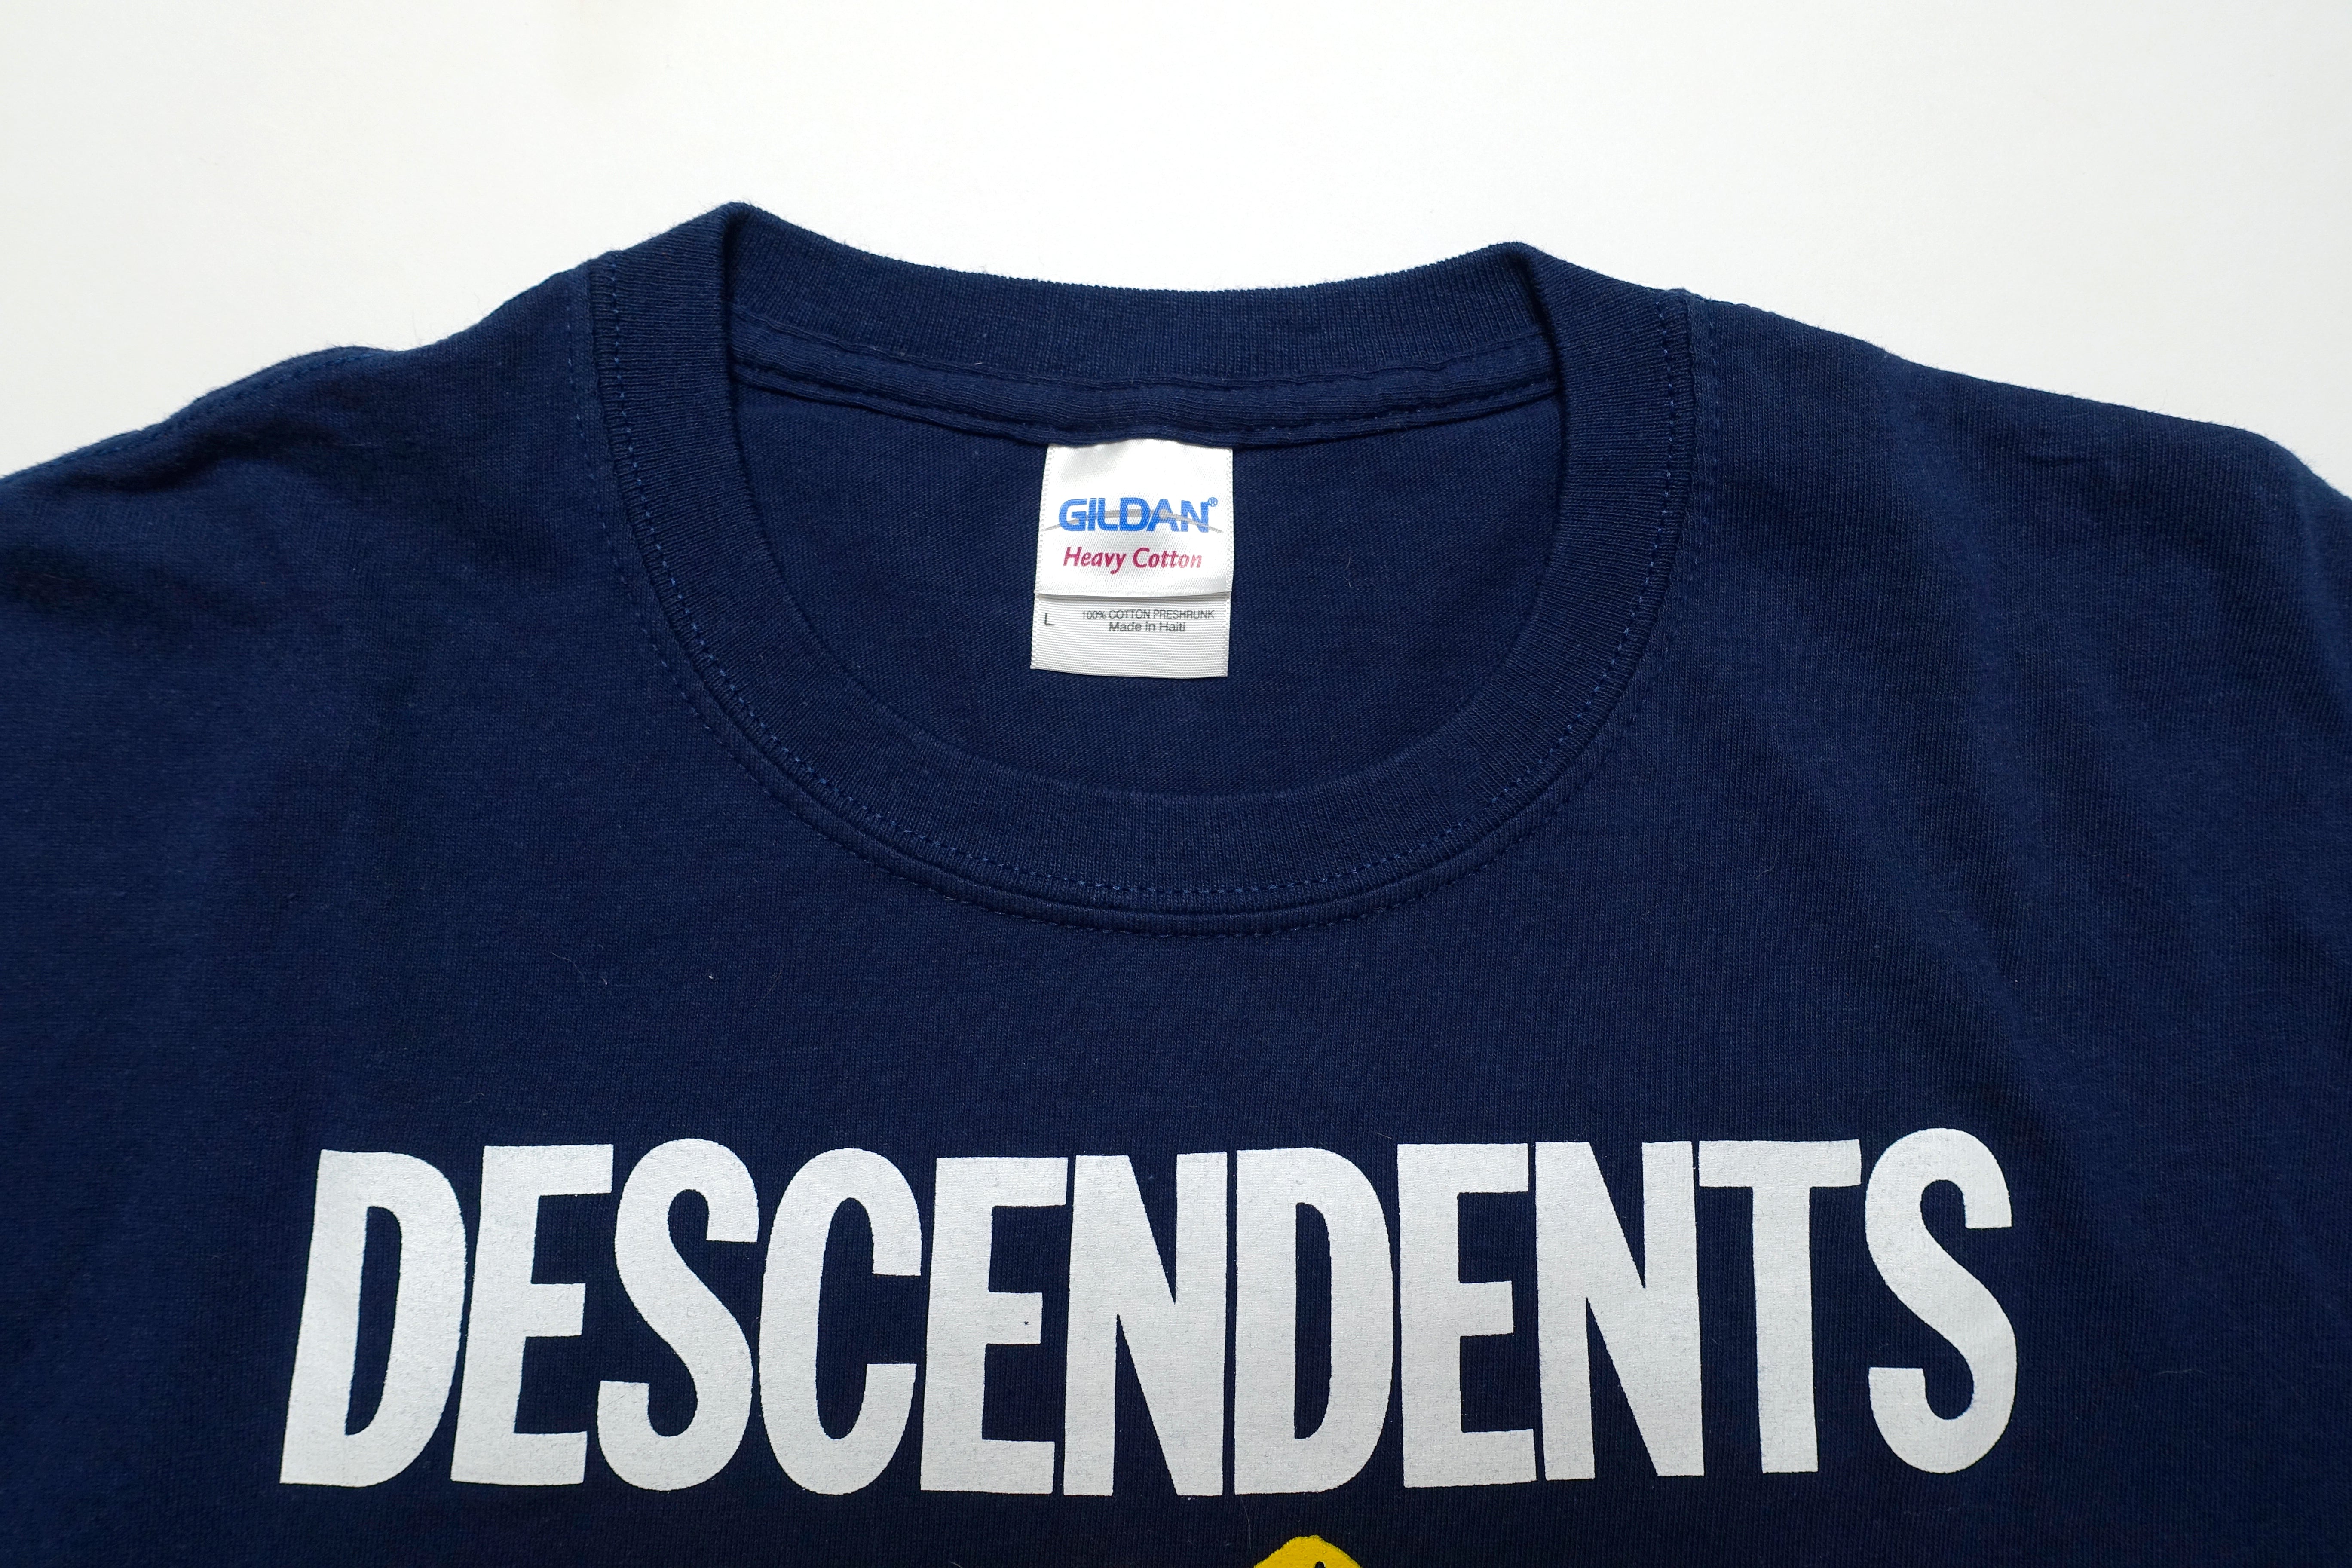 Descendents - Groezrock 2011 Tour Shirt Size Large